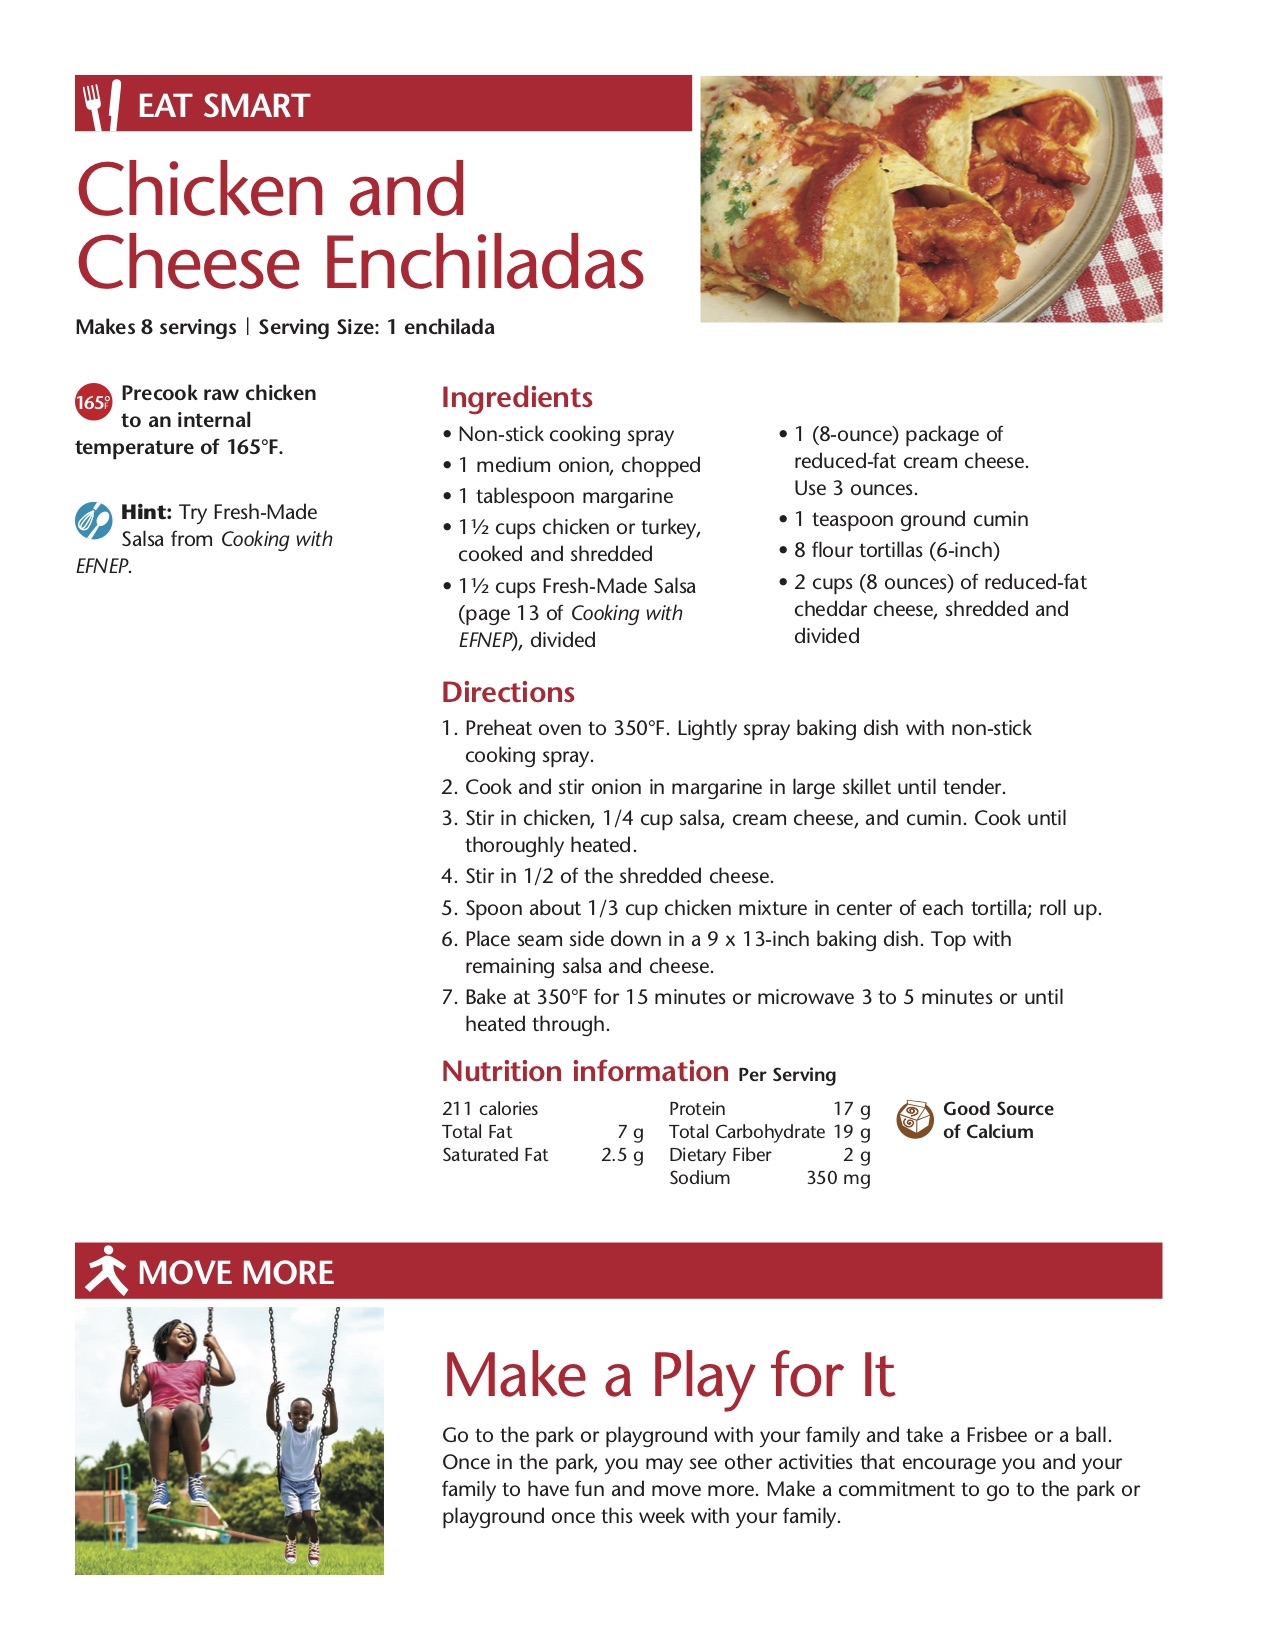 Chicken and cheese enchiladas recipe